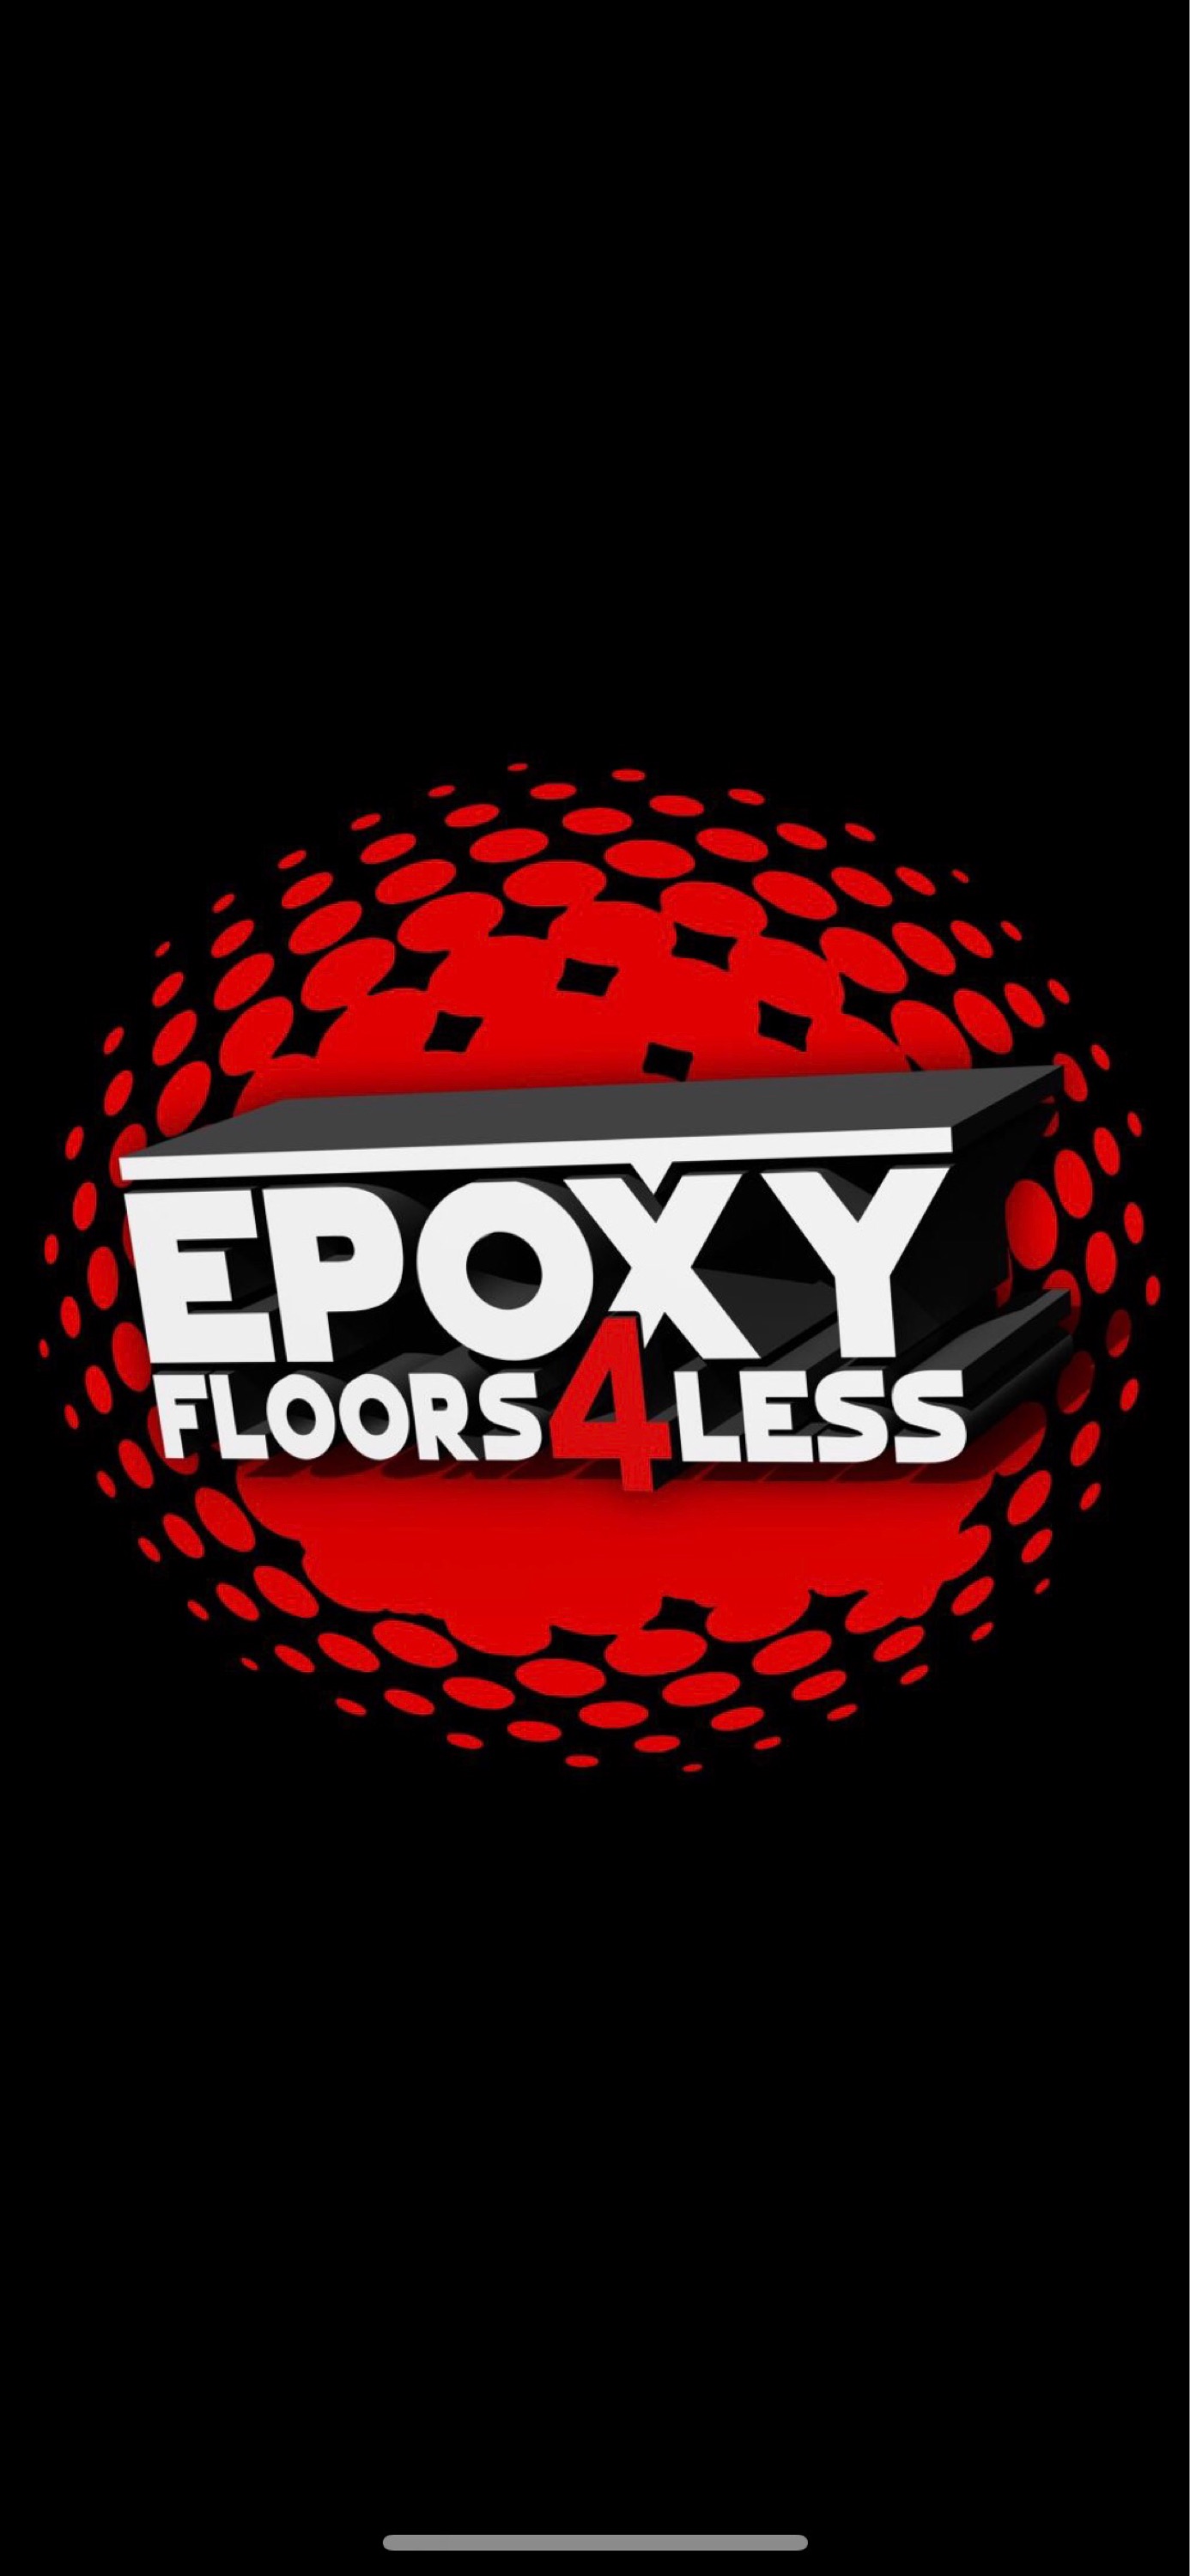 Epoxy Floors 4 Less Logo